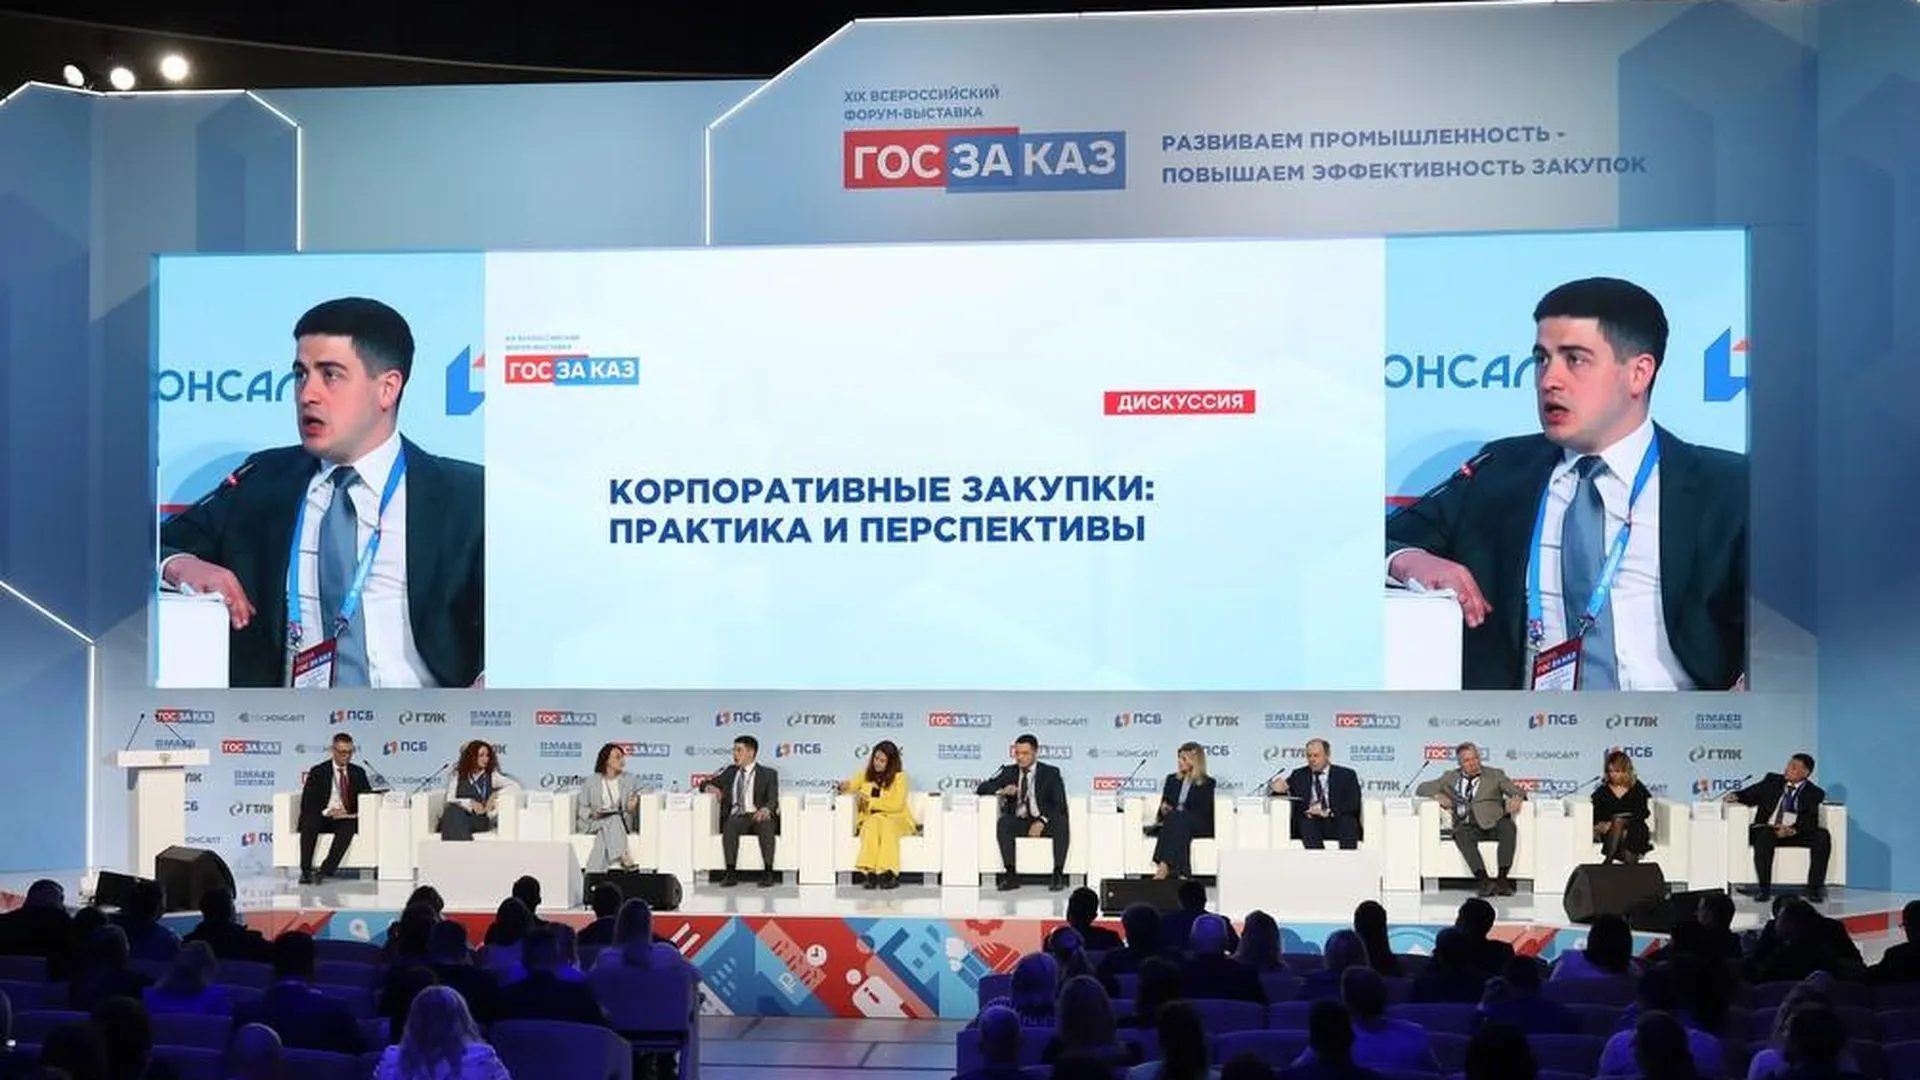 На форуме «Госзаказ» в Москве представили лучшие закупочные практики корпораций